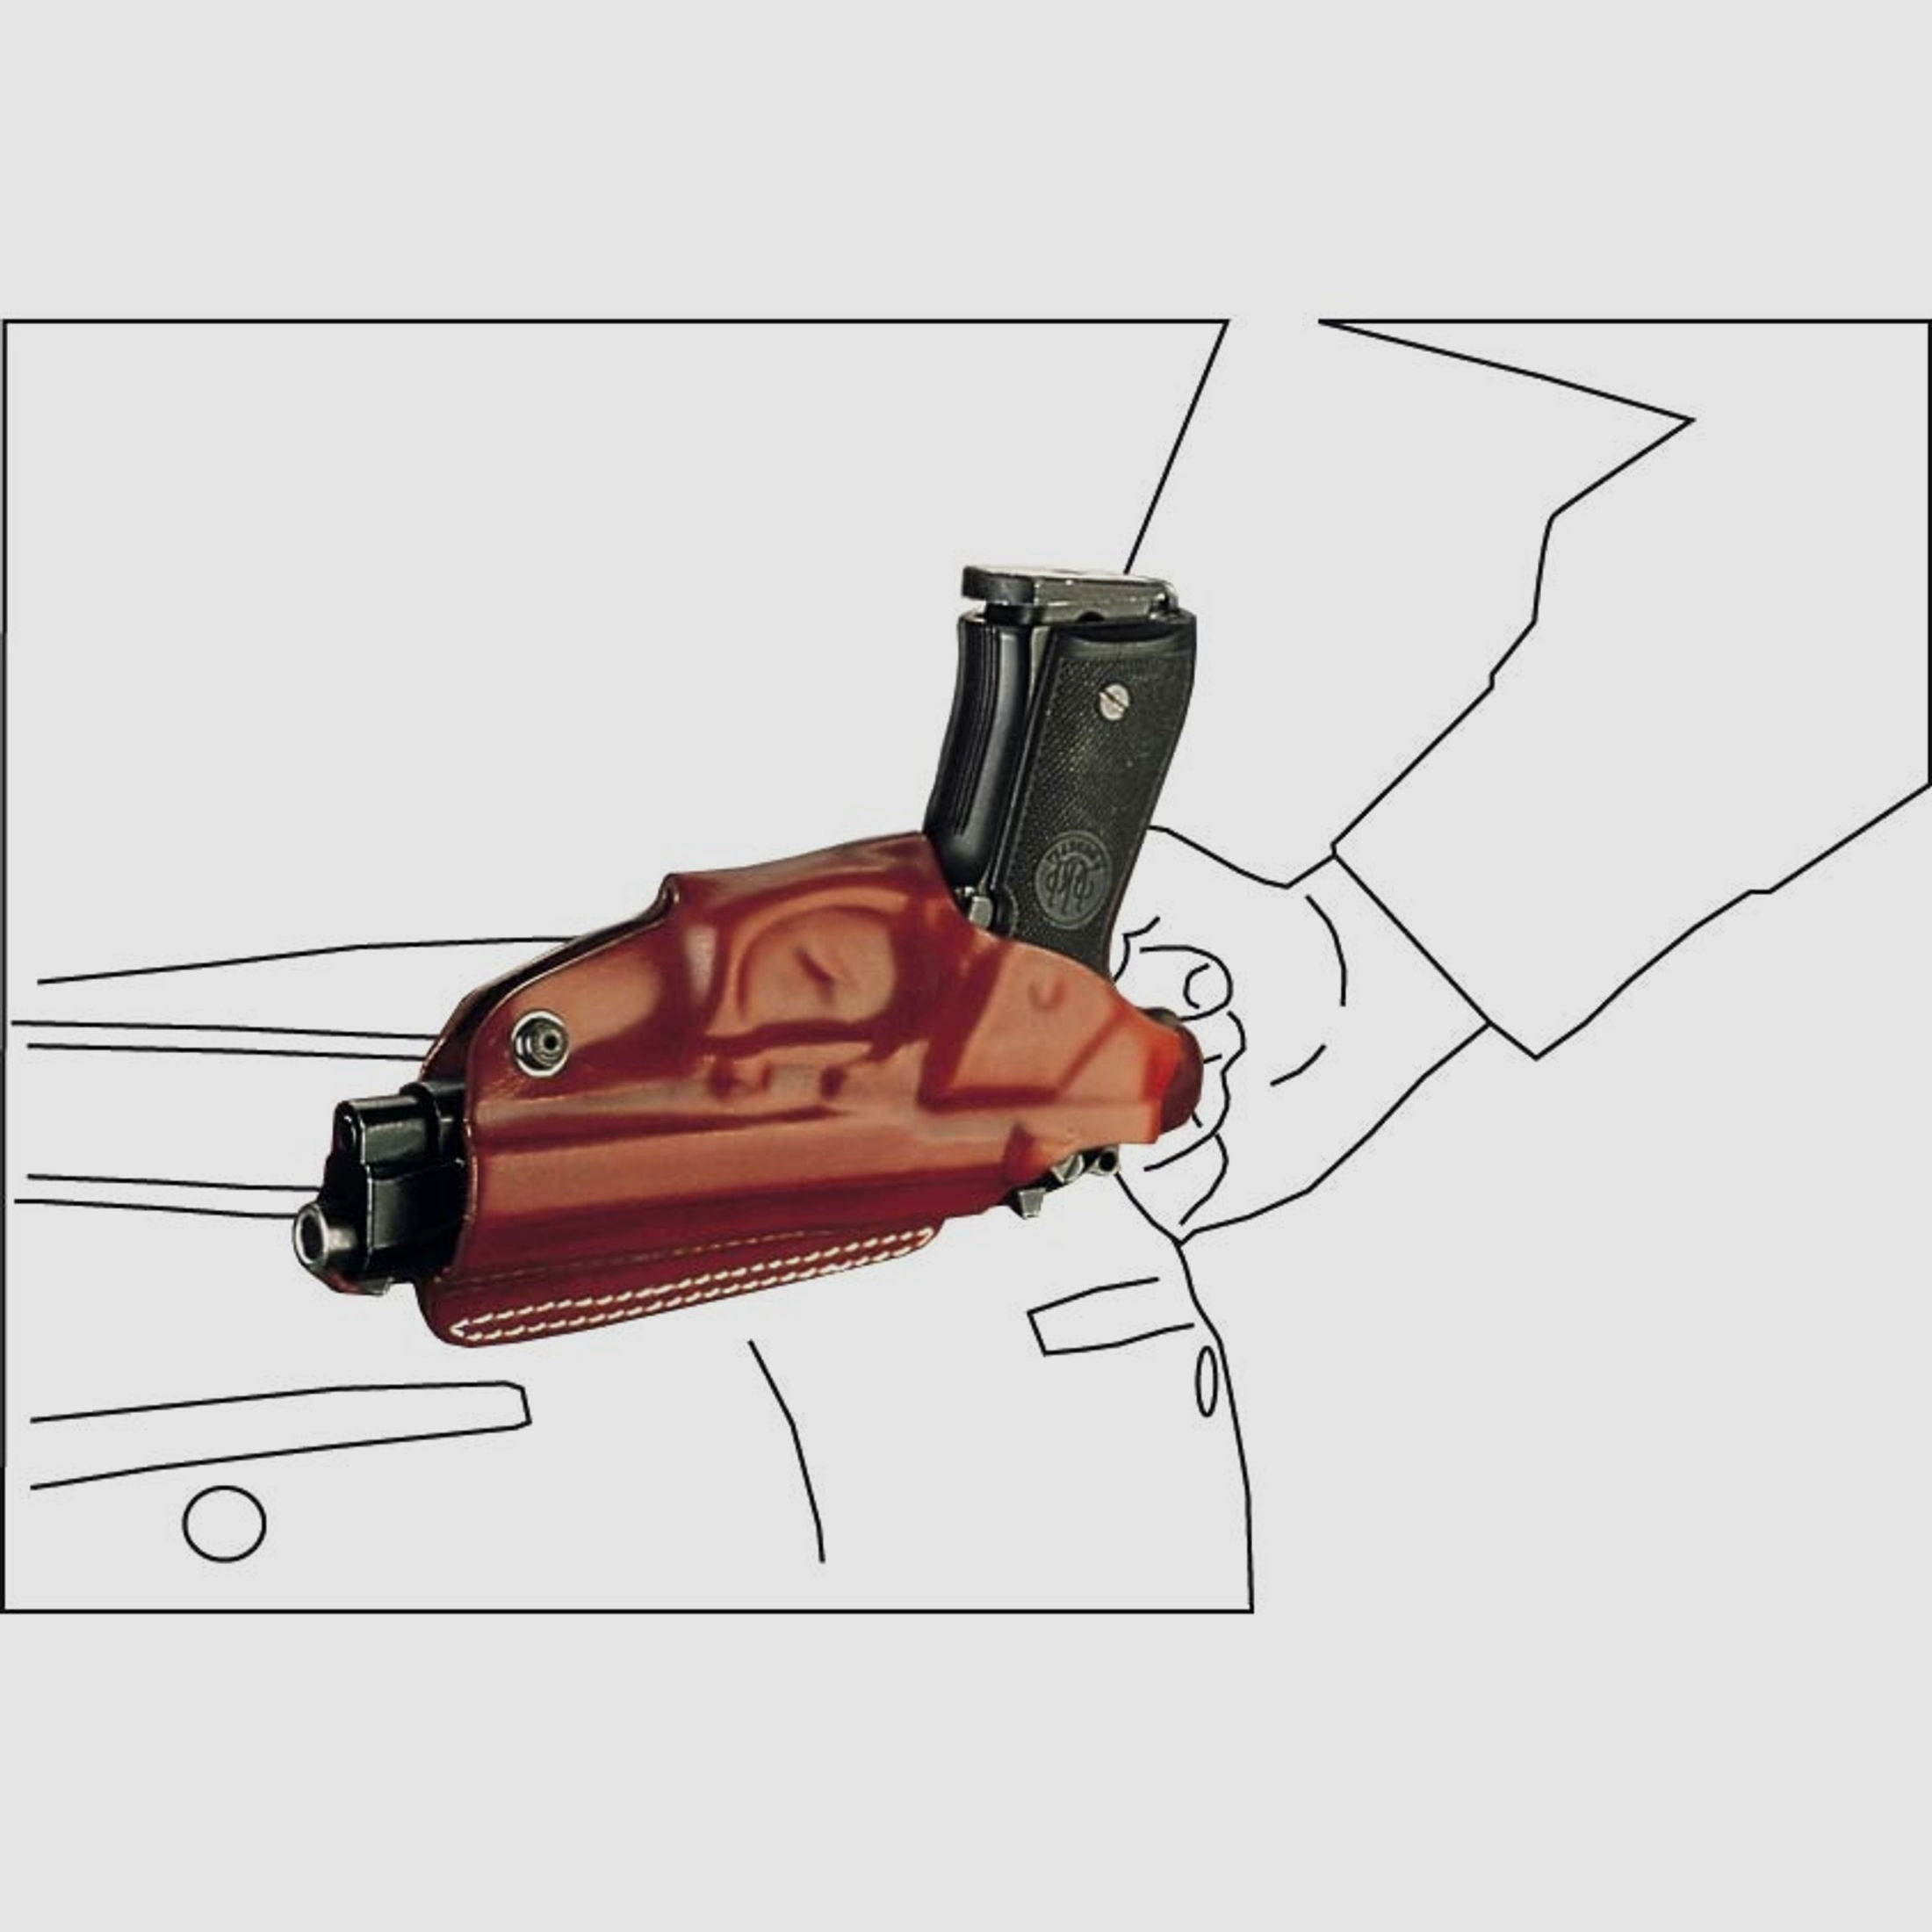 Mehrzweck-Schulterholster/Gürtelholster "Miami" Walther P99/P99Q/PPQ/PPQ M2-Braun-Rechtshänder